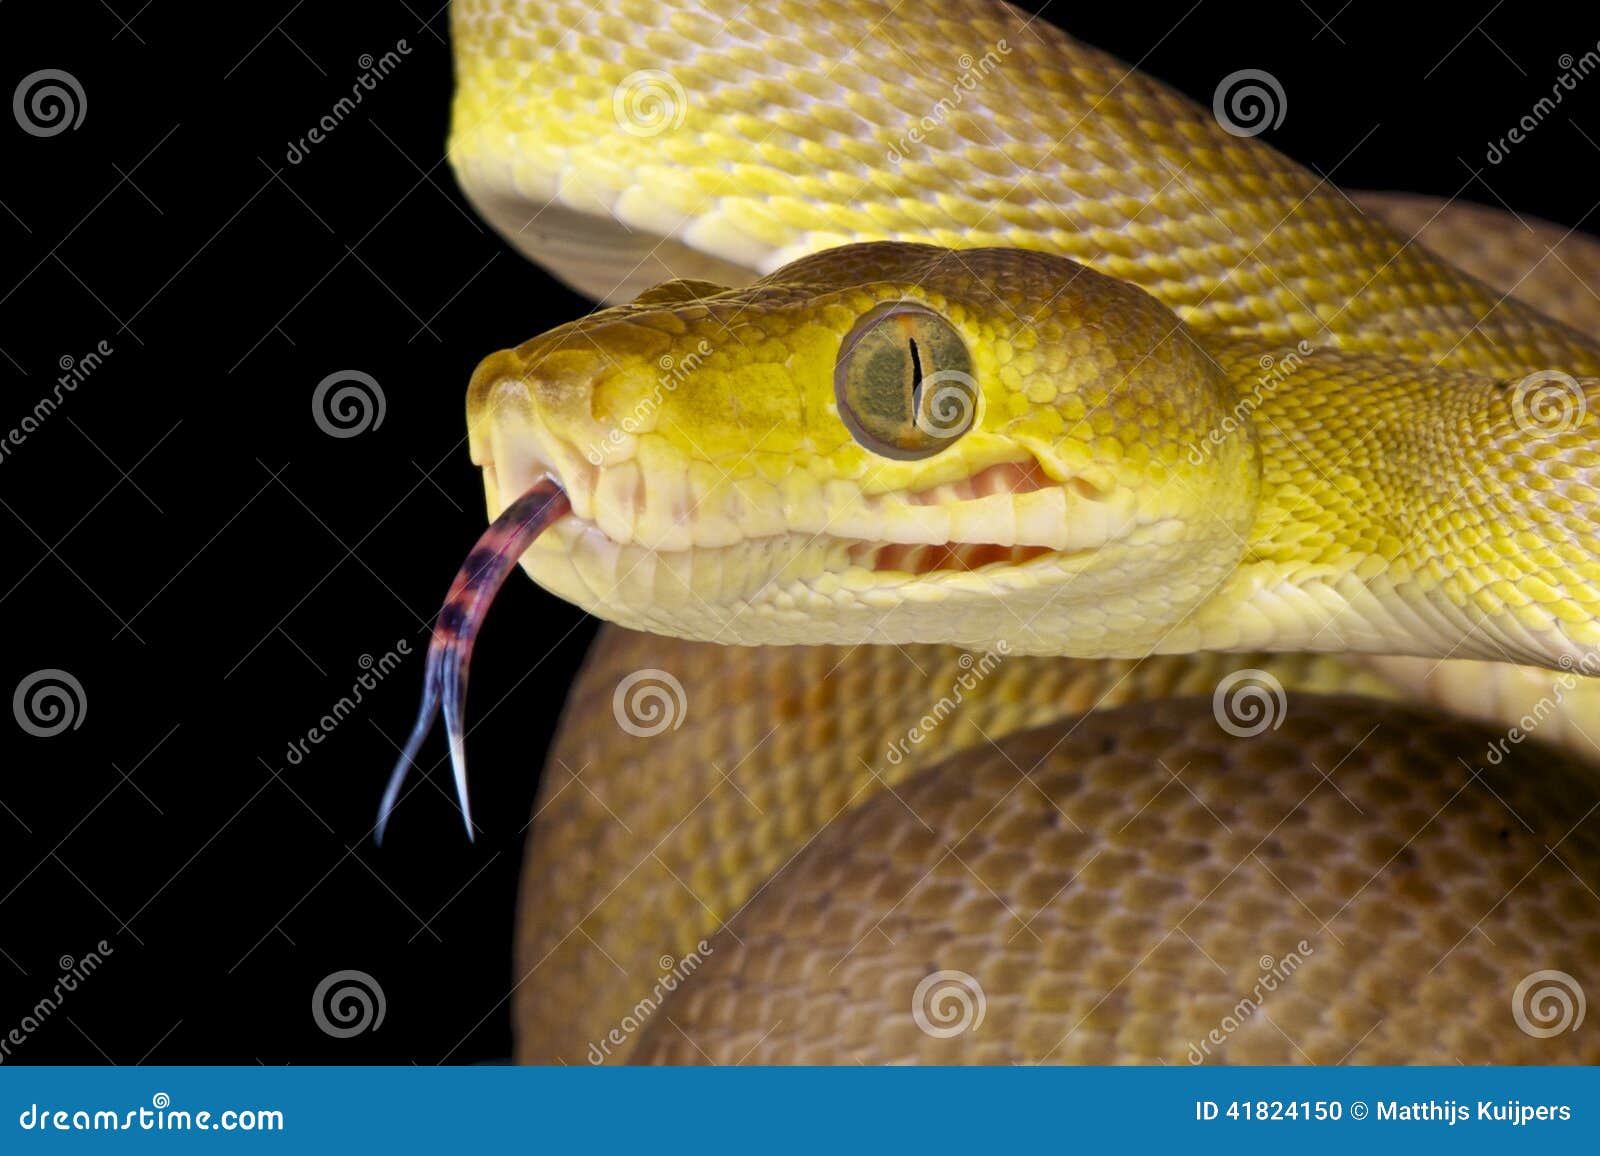 snake using its tongue / corallus hortulanus